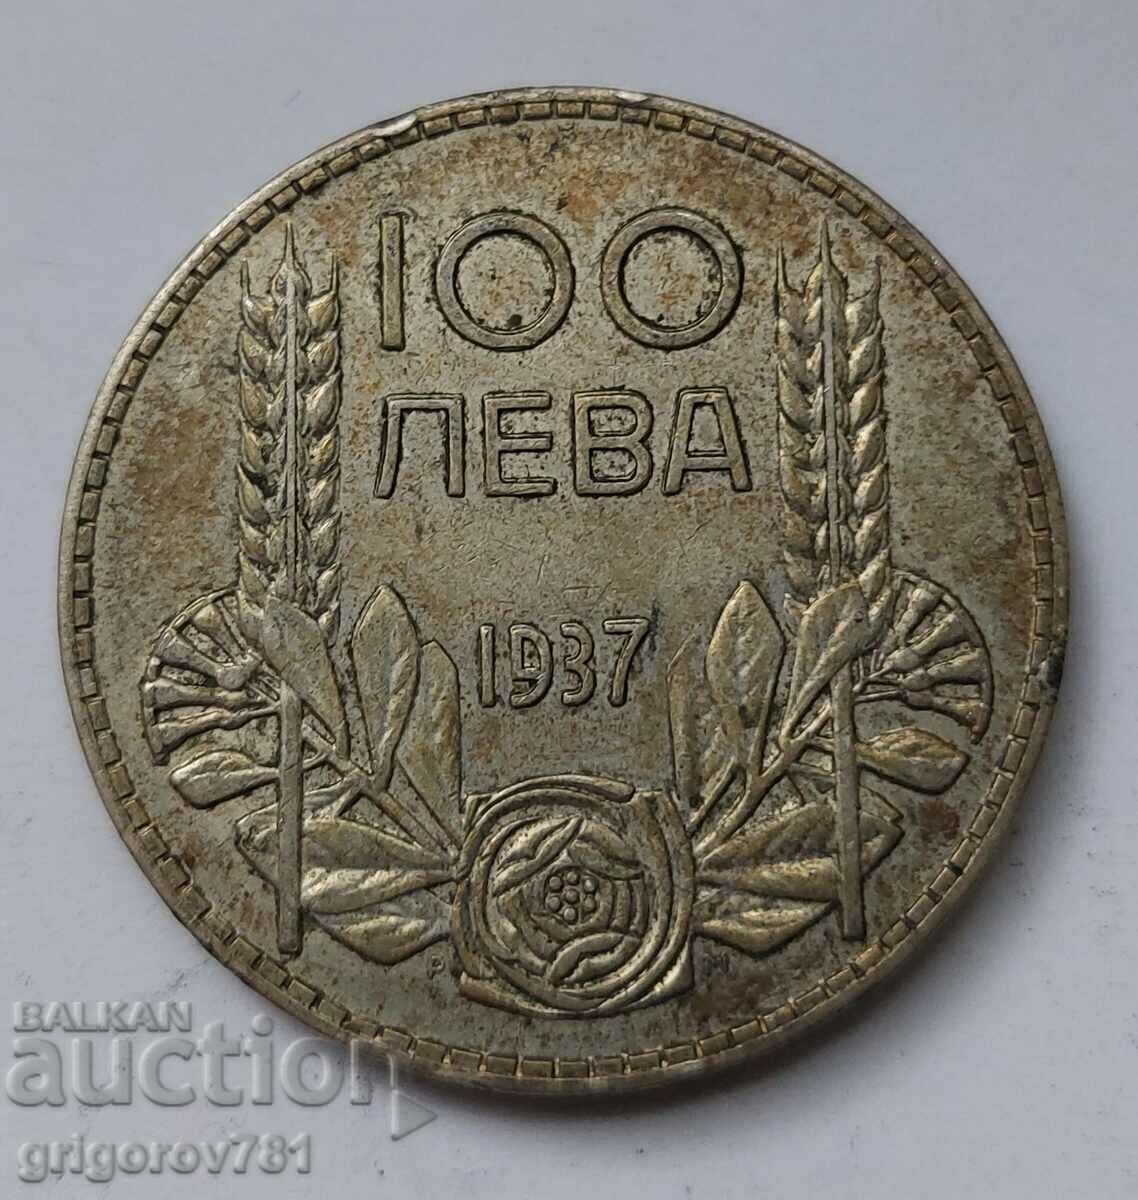 100 leva silver Bulgaria 1937 - silver coin #25